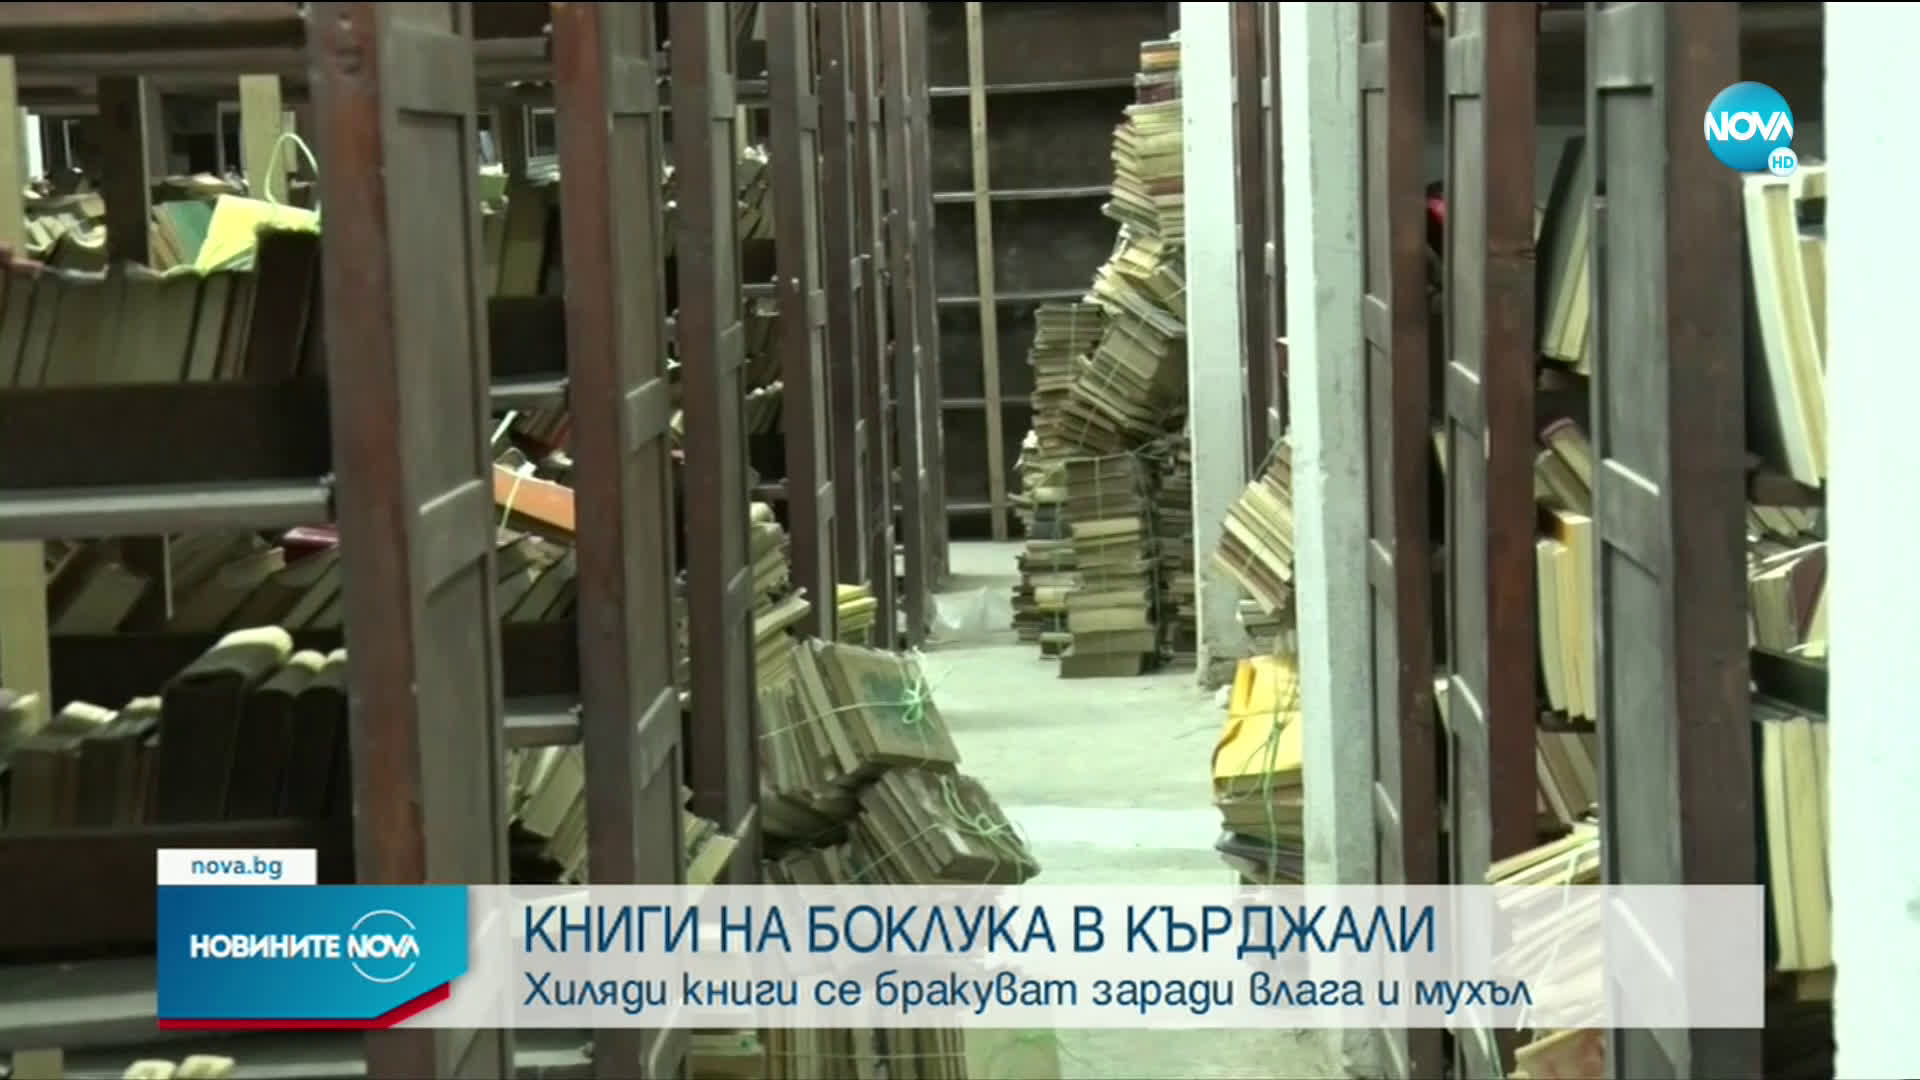 Хиляди книги от библиотеката в Кърджали – за вторични суровини